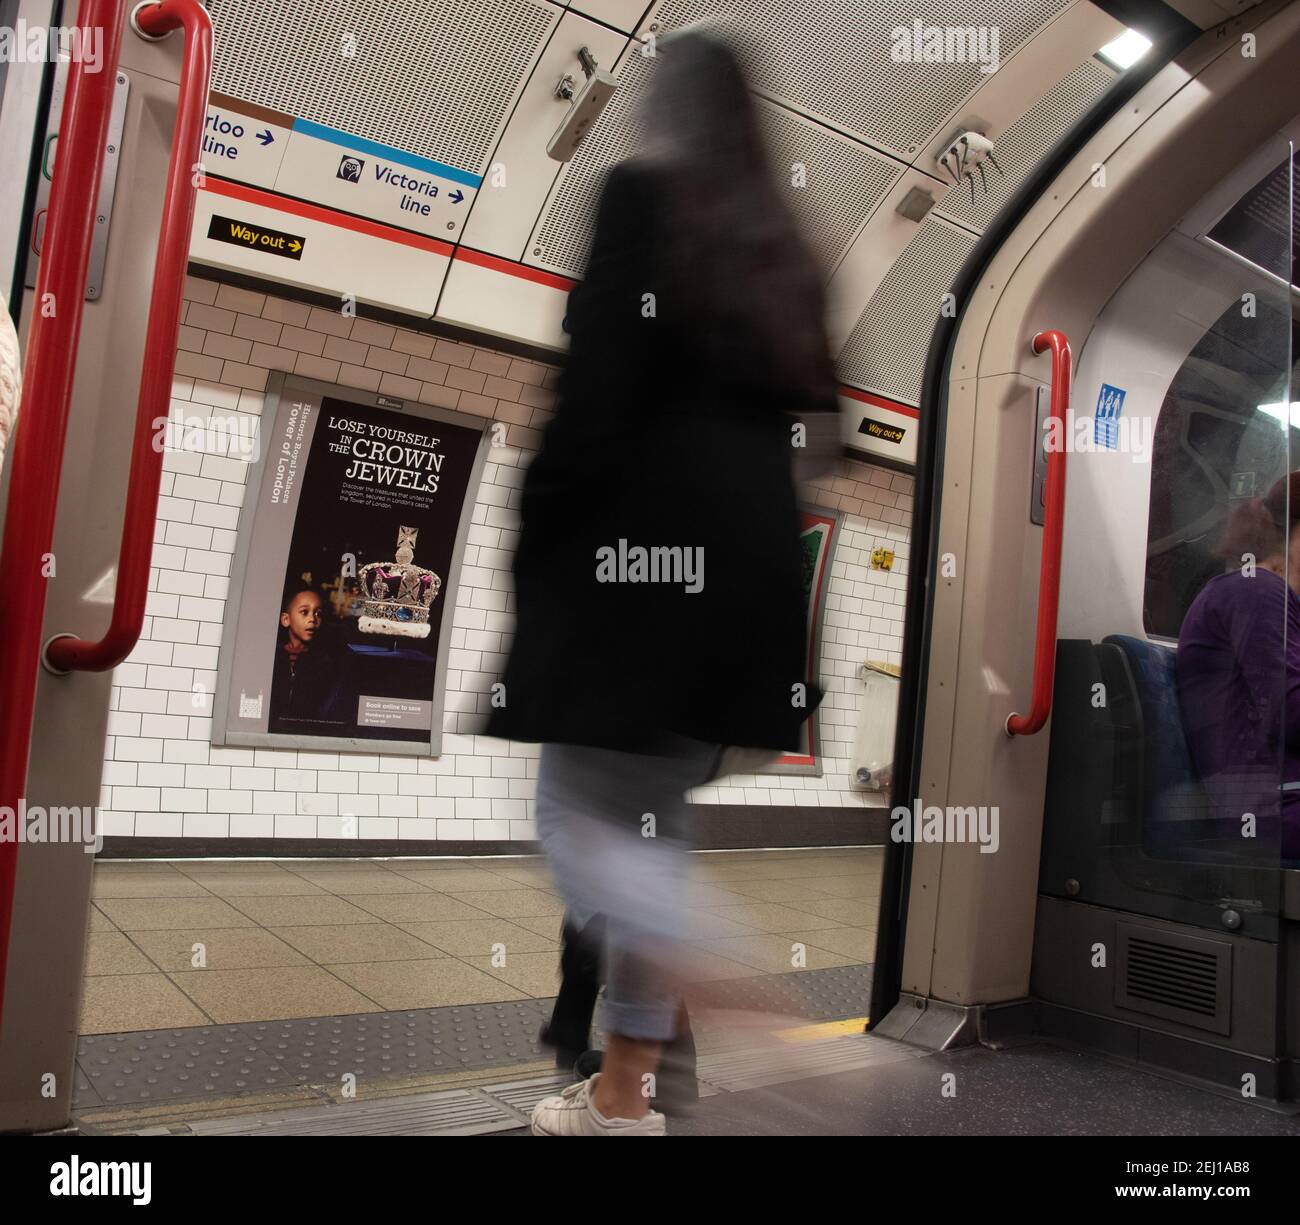 Le persone casuali che escono dal treno alla stazione della metropolitana si sono offuscate a londra, Regno Unito Foto Stock